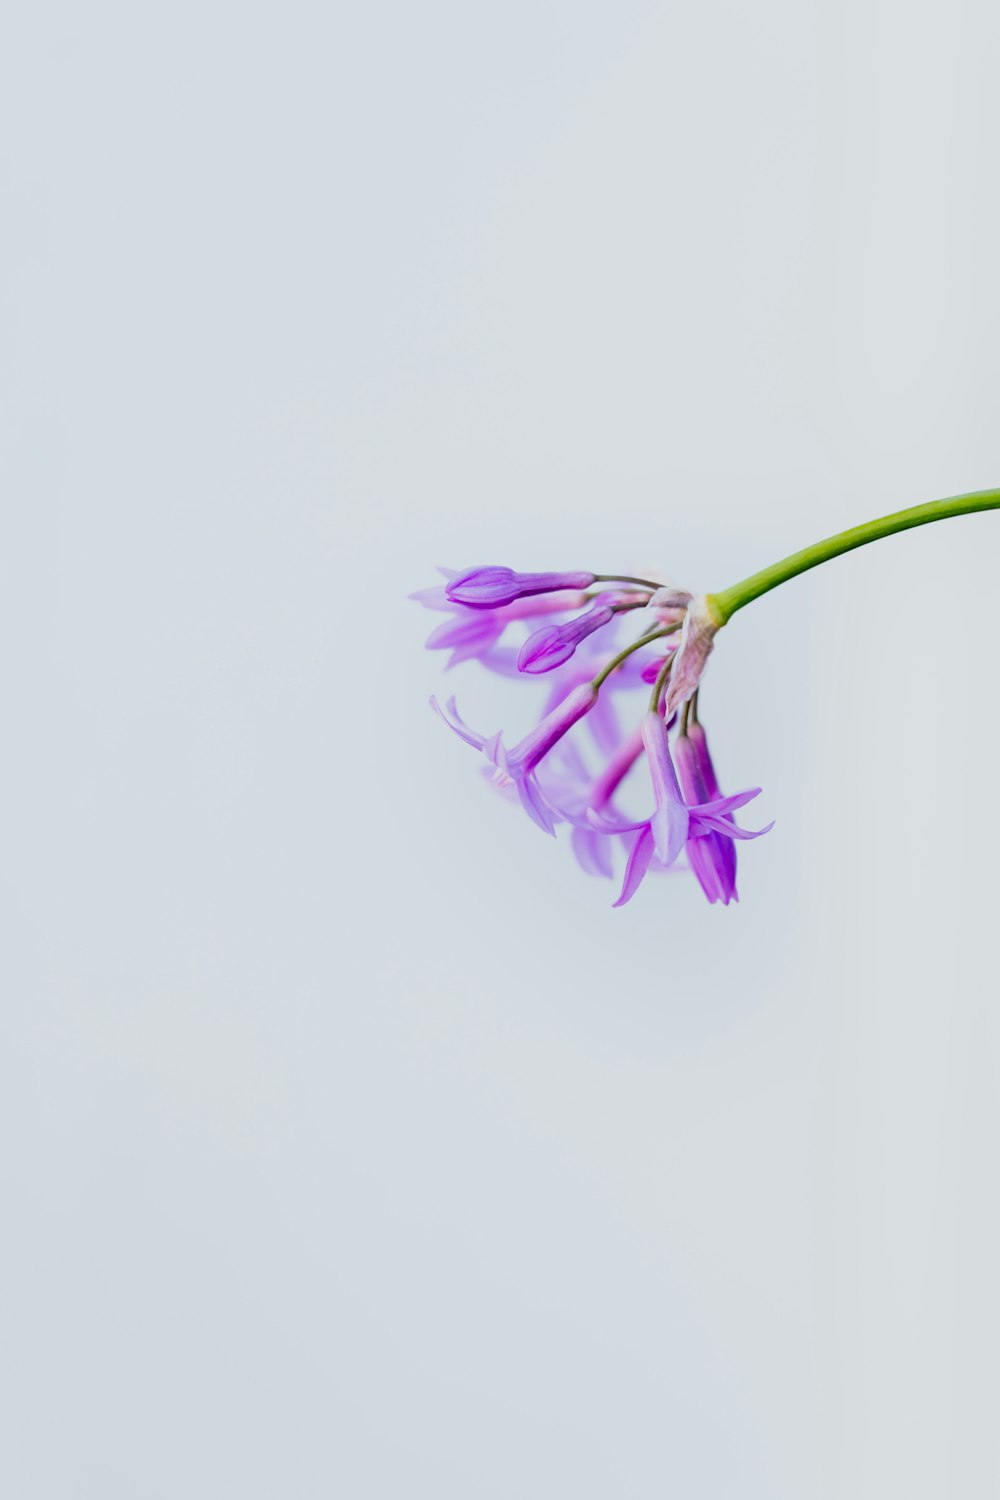 purple flower on white background